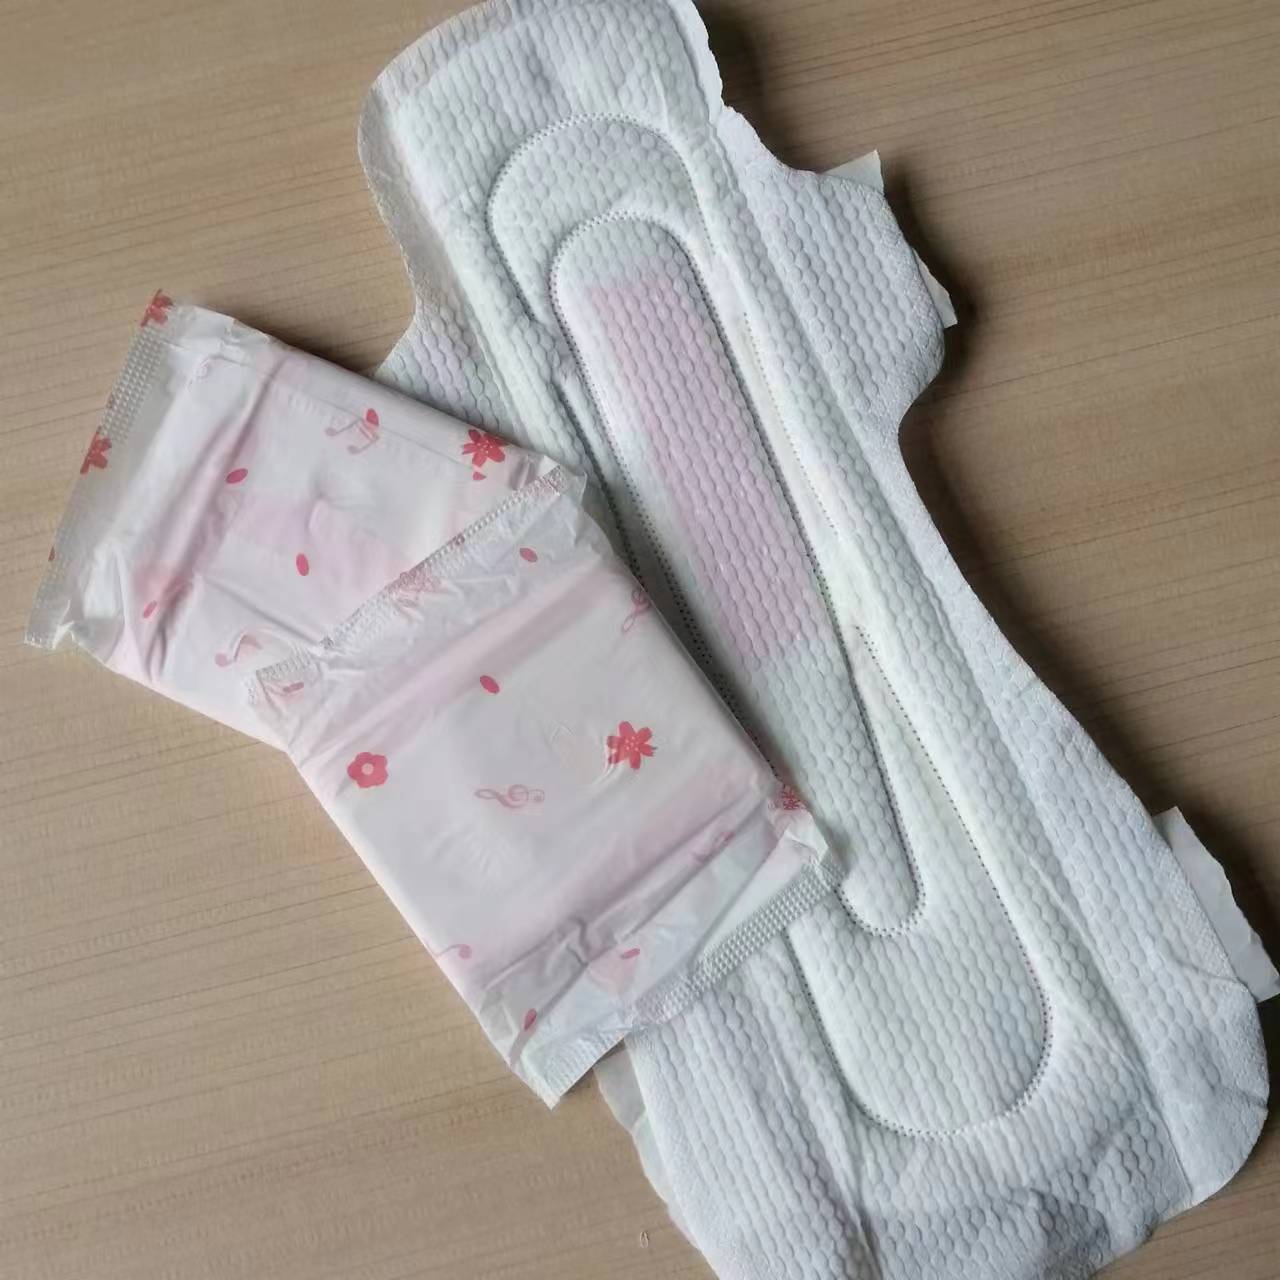 Najwyższa jakość podpaski higieniczne damskie kobiece podpaski menstruacyjne styl skrzydełkowy okres czas podpaski super miękkie podpaski higieniczne